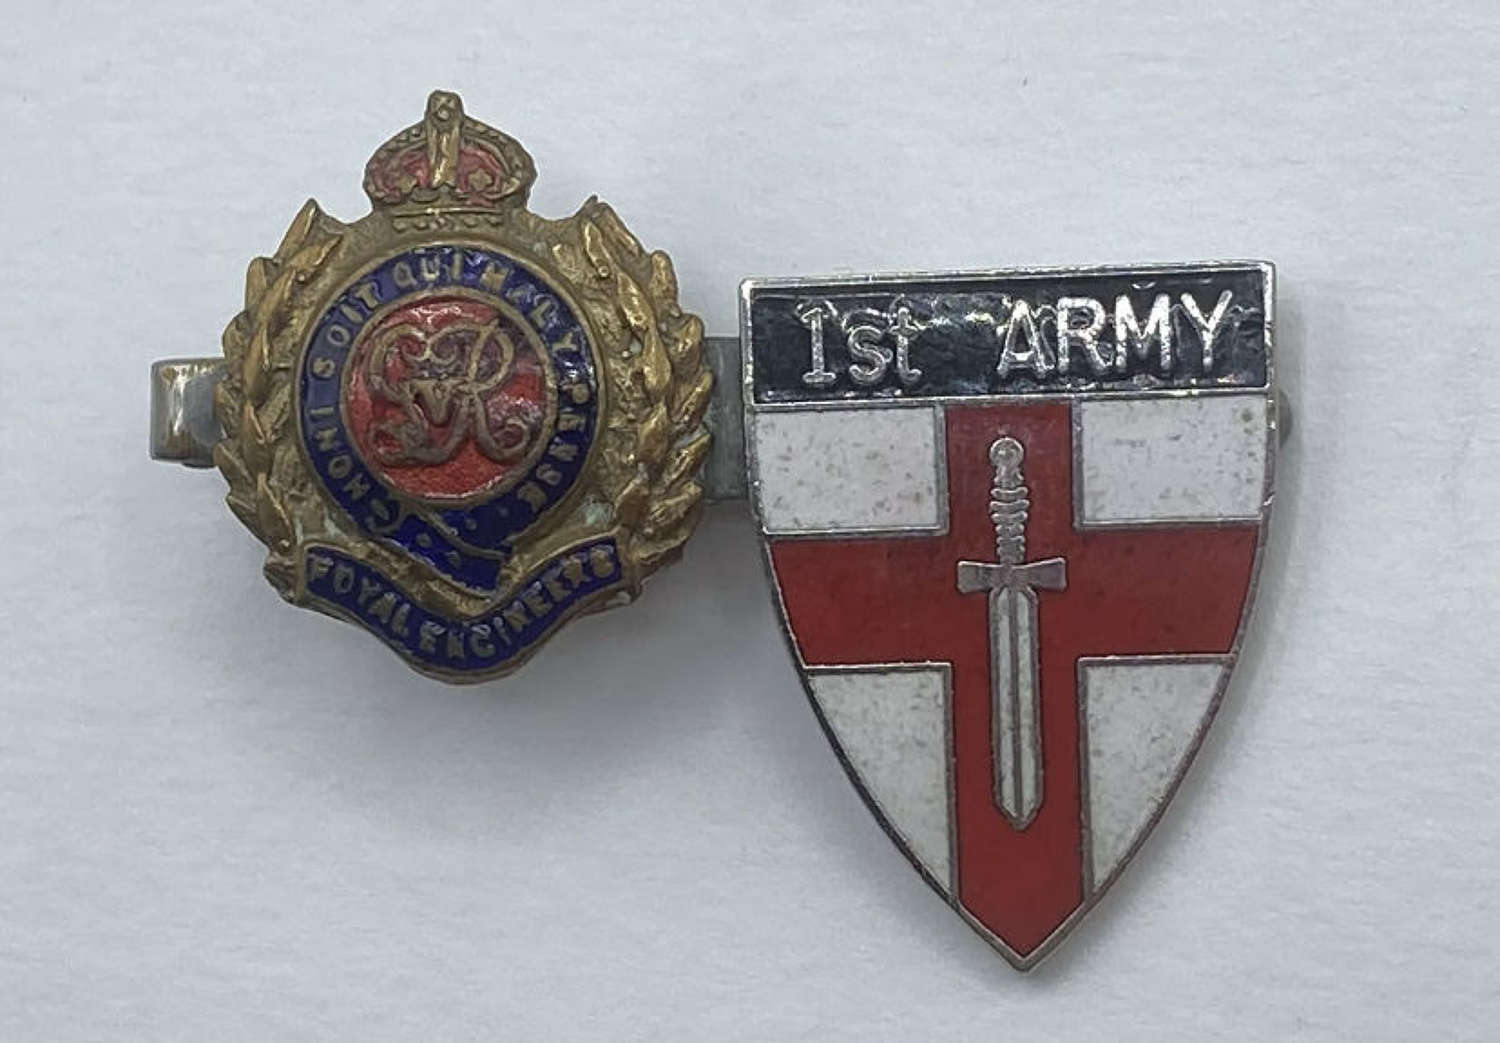 WW2 British Army Royal Engineers Kings Crown & 1st Army Enamel Badges